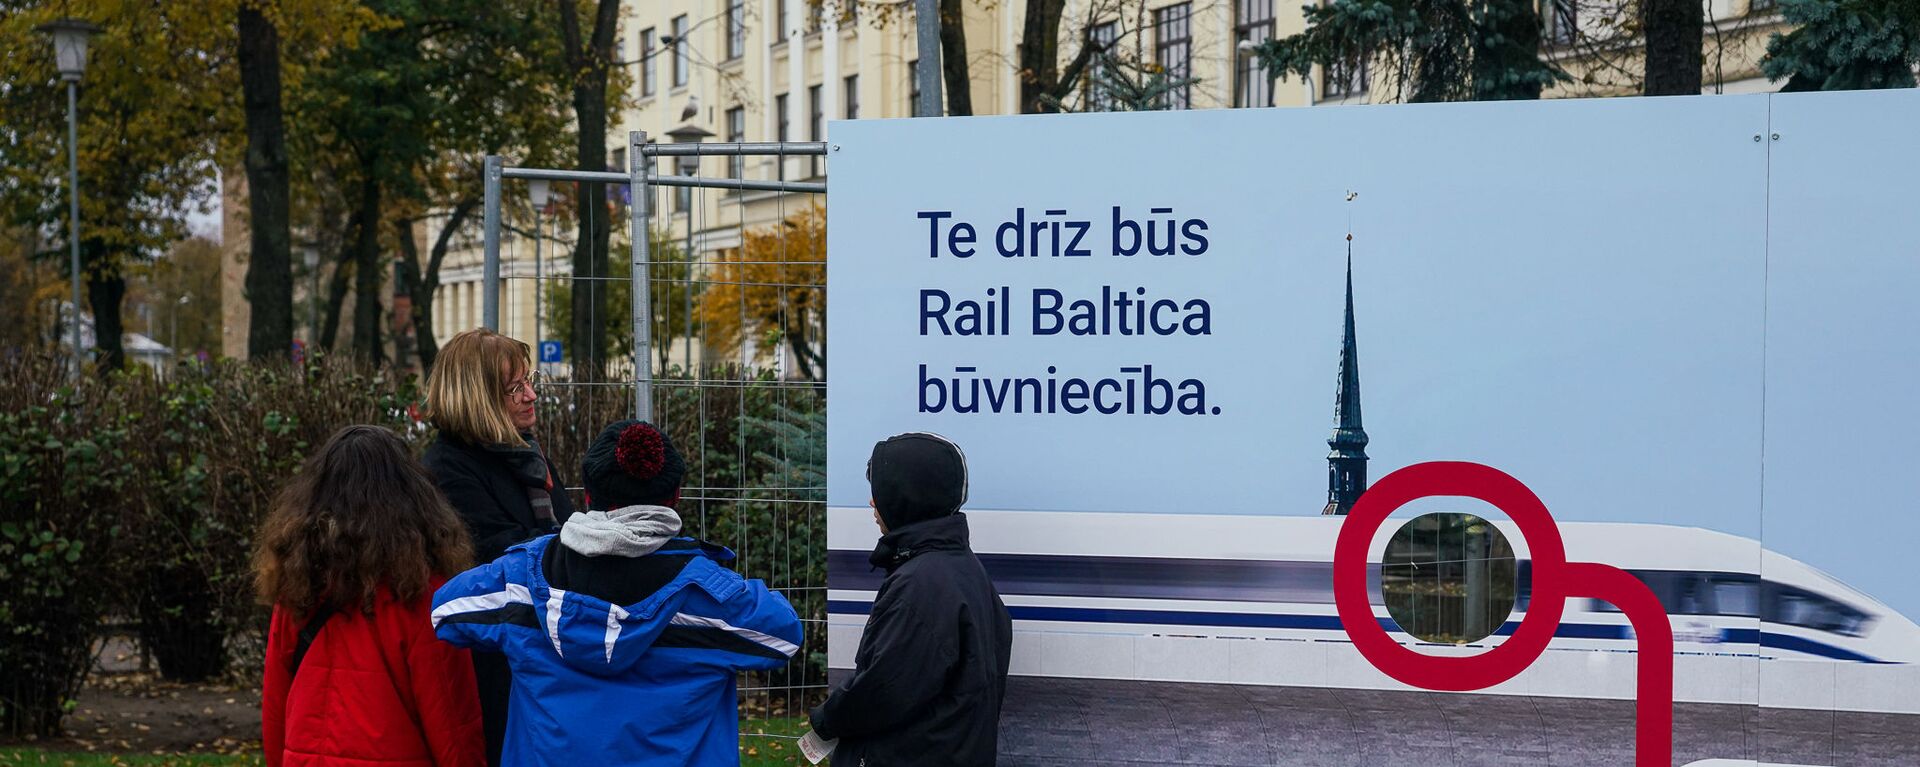 Презентация плана строительства Центрального рижского узла новой железной дороги Rail Baltica - Sputnik Latvija, 1920, 16.11.2021